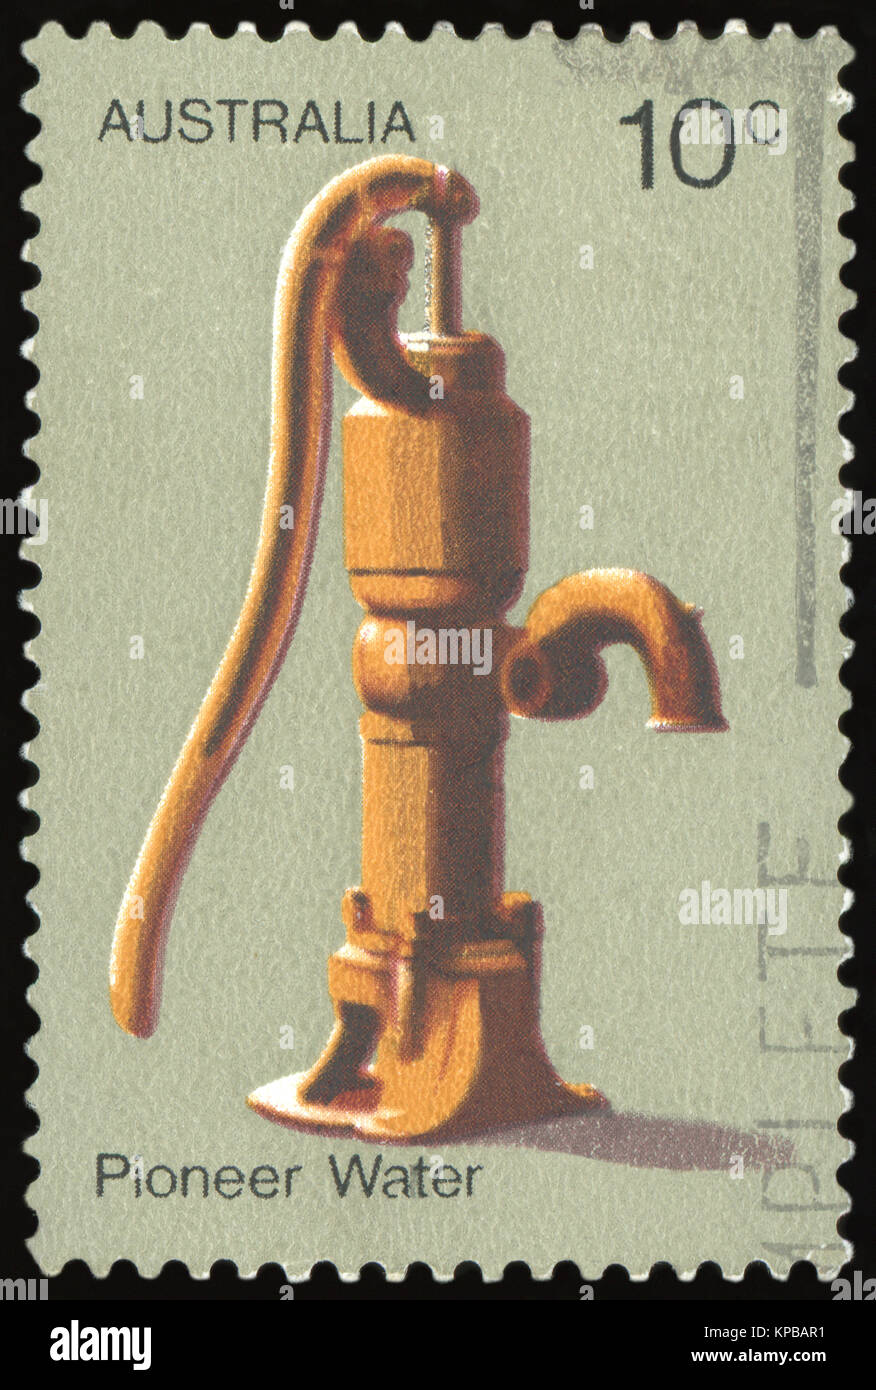 Australie - VERS 1972 : timbre imprimé dans l'Australie montre Pompe à eau, la vie des pionniers de l'Australie, vers 1972 Banque D'Images